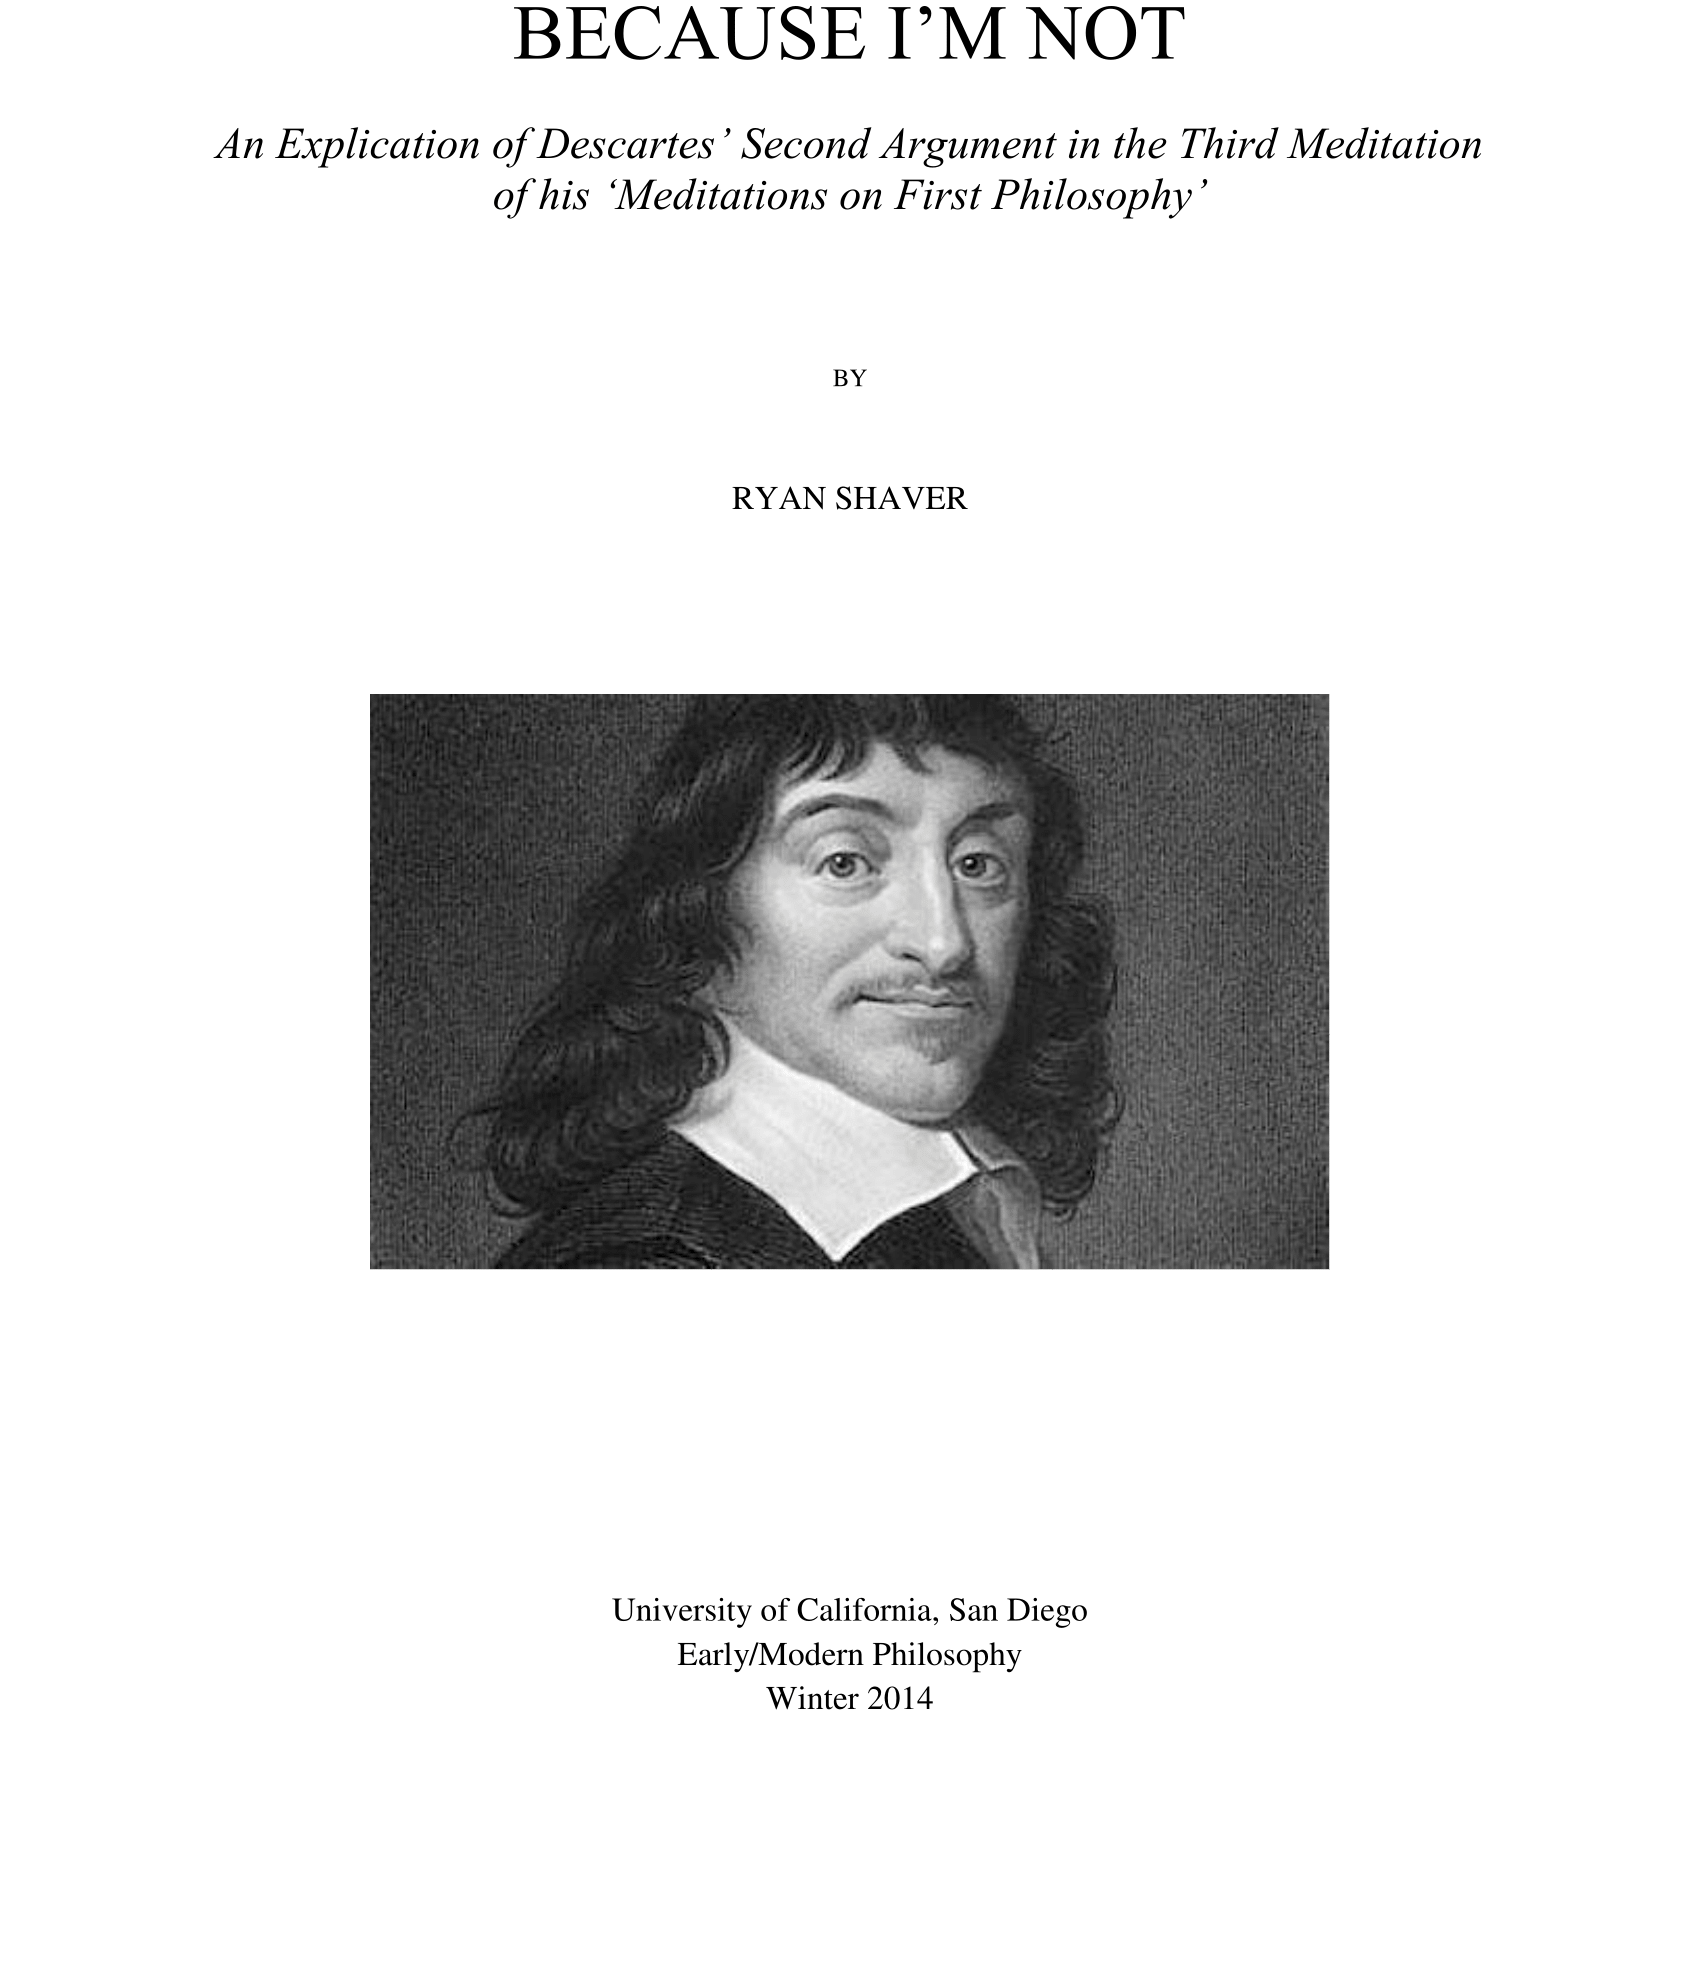 Phil 111 - Descartes Paper-1.png